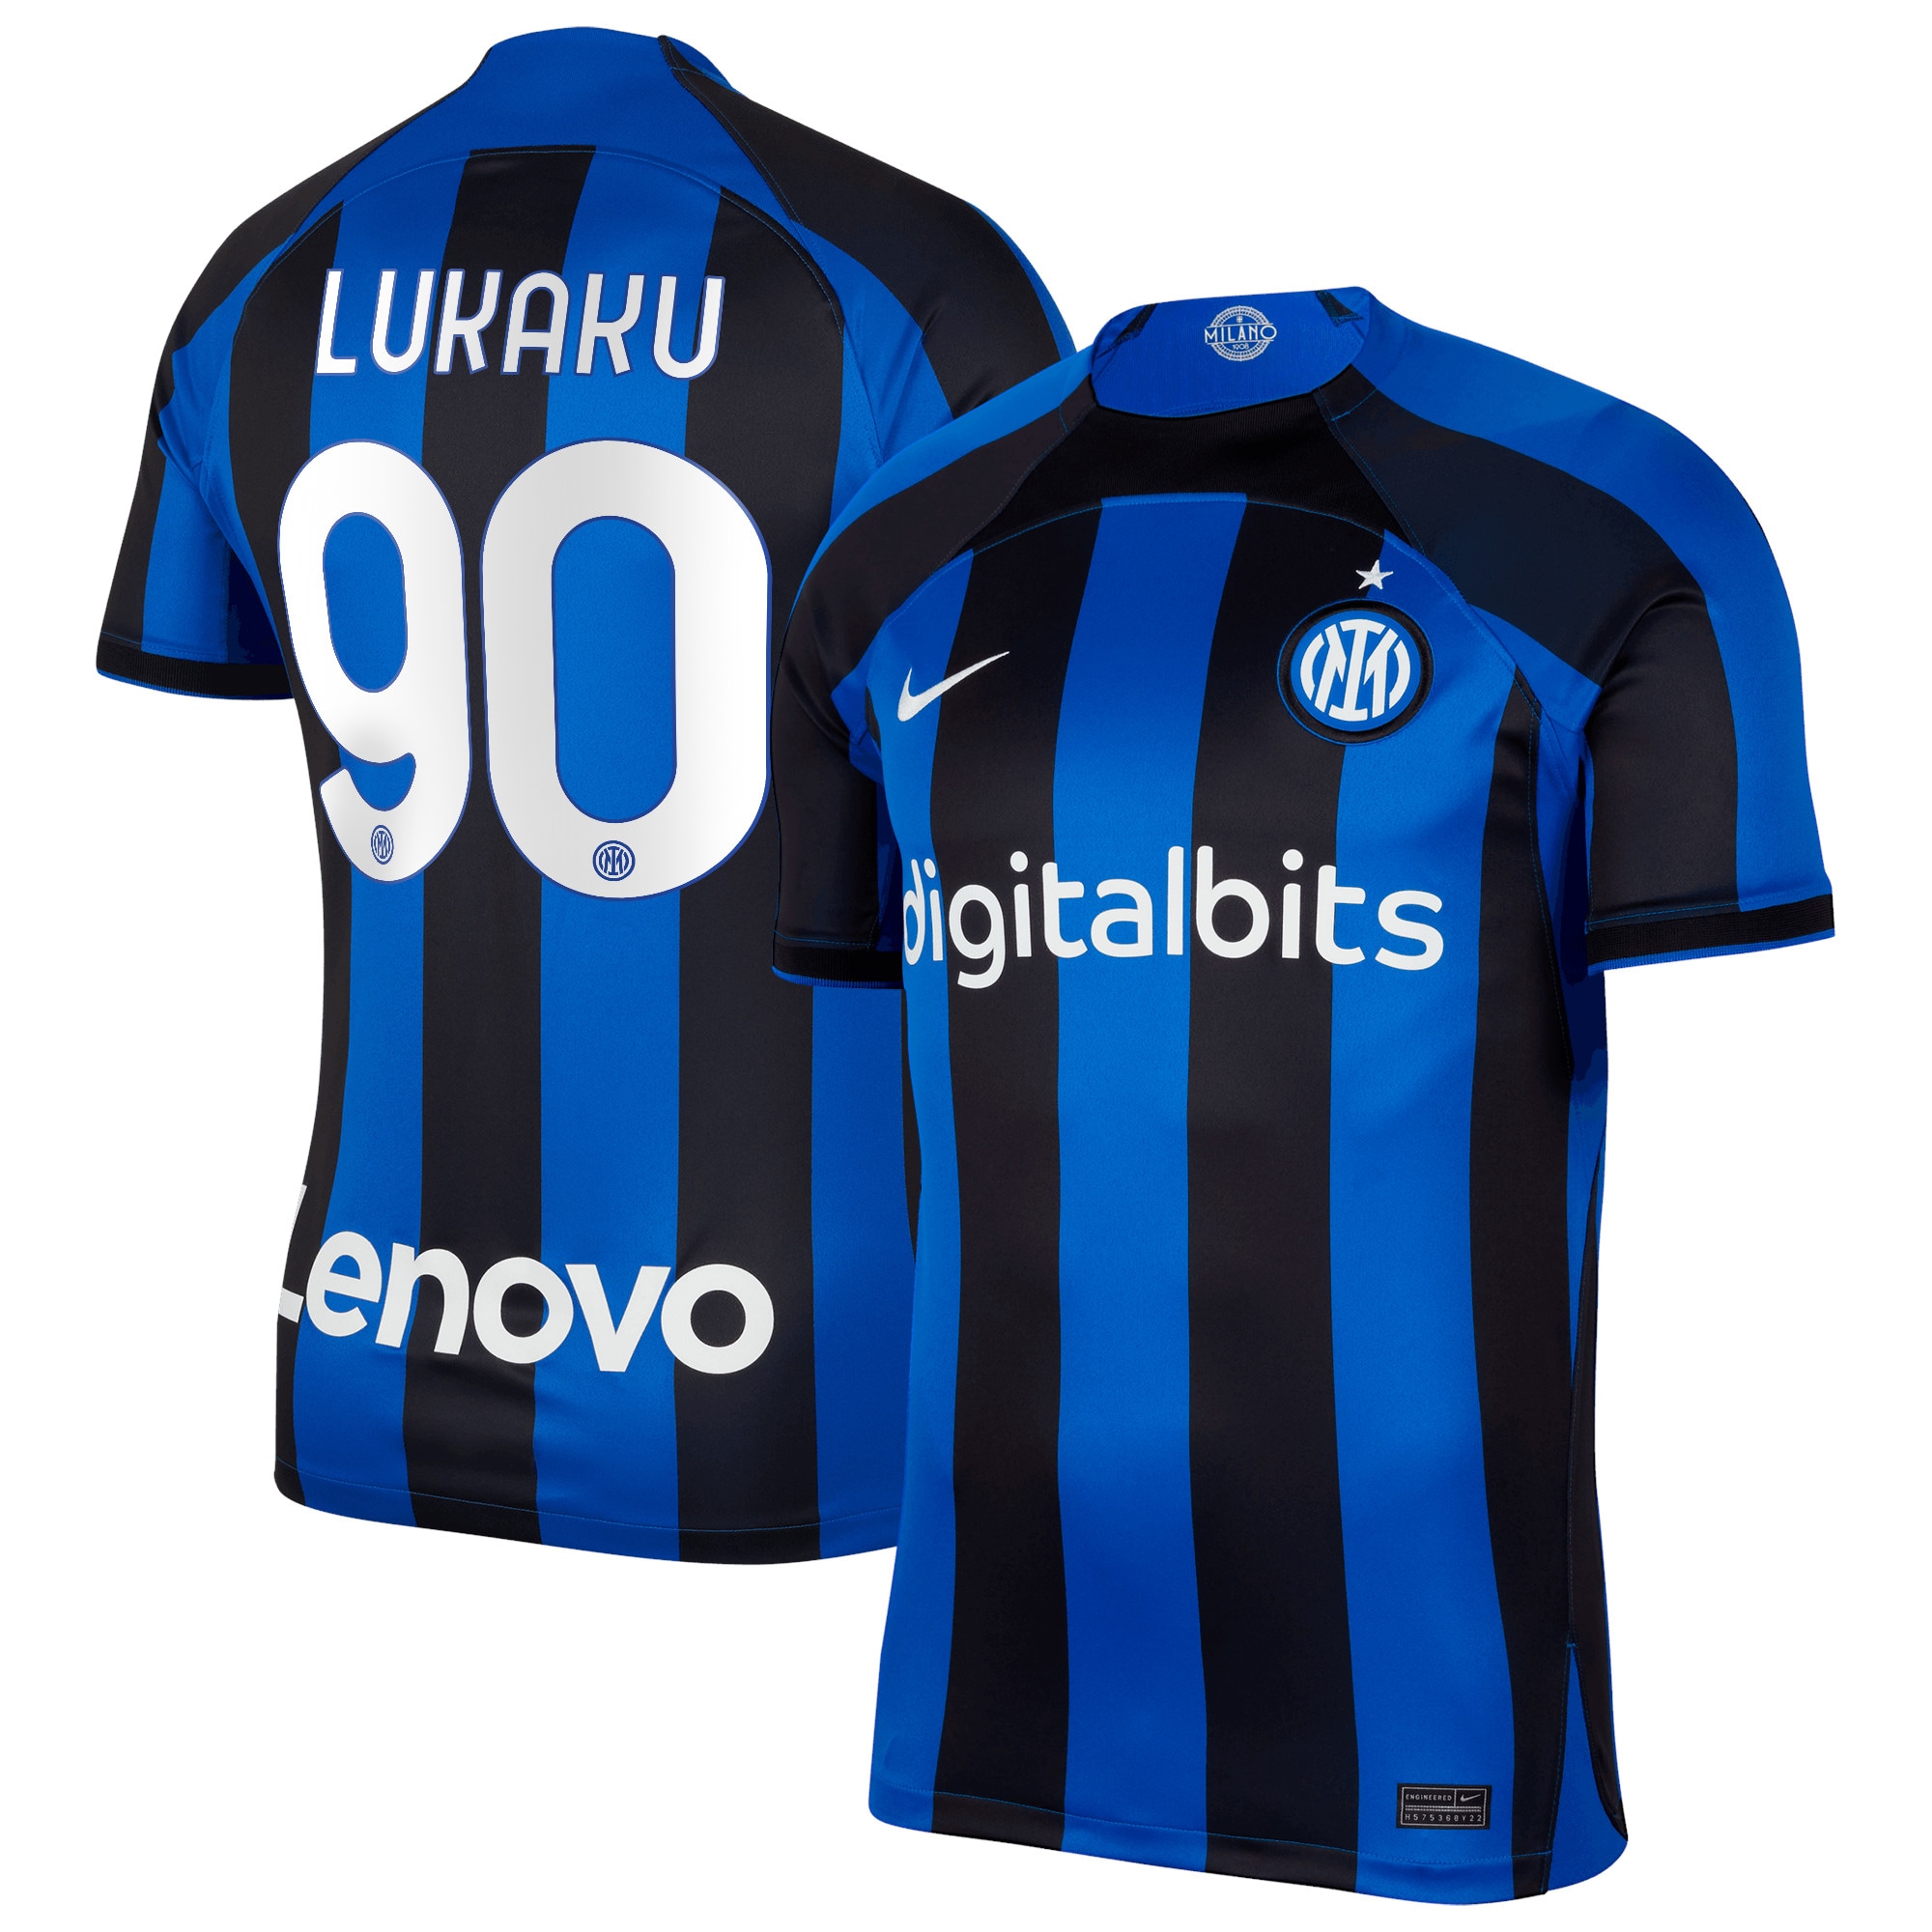 Inter Milan Home Stadium Shirt 2022-23 with Lukaku 90 printing